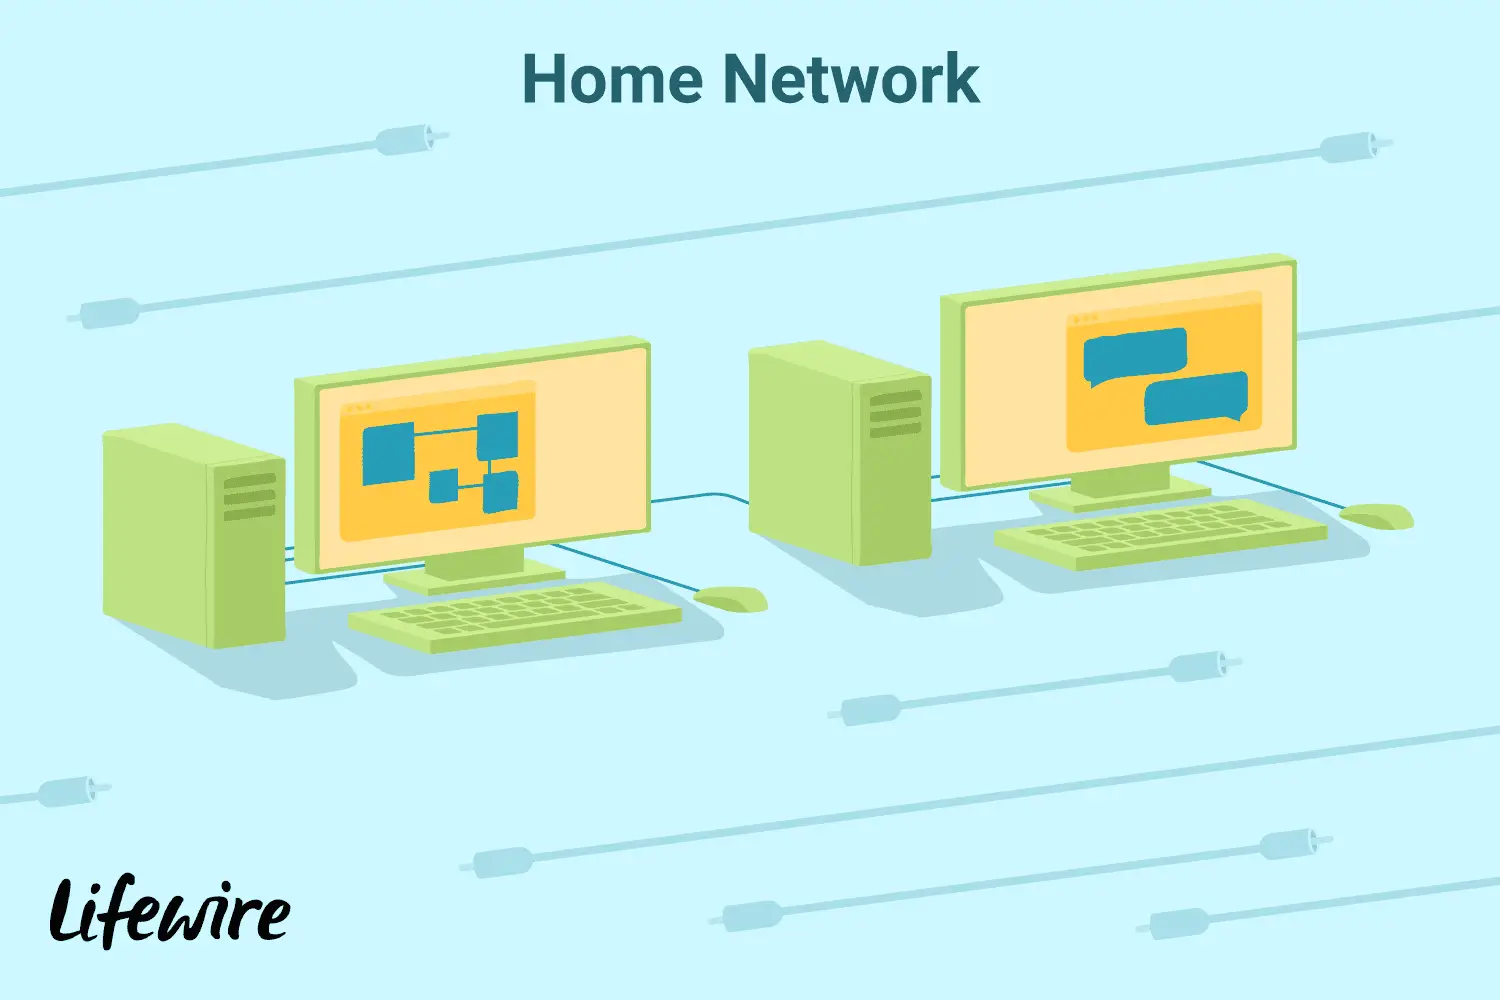 Uma ilustração de servidores em uma rede doméstica.